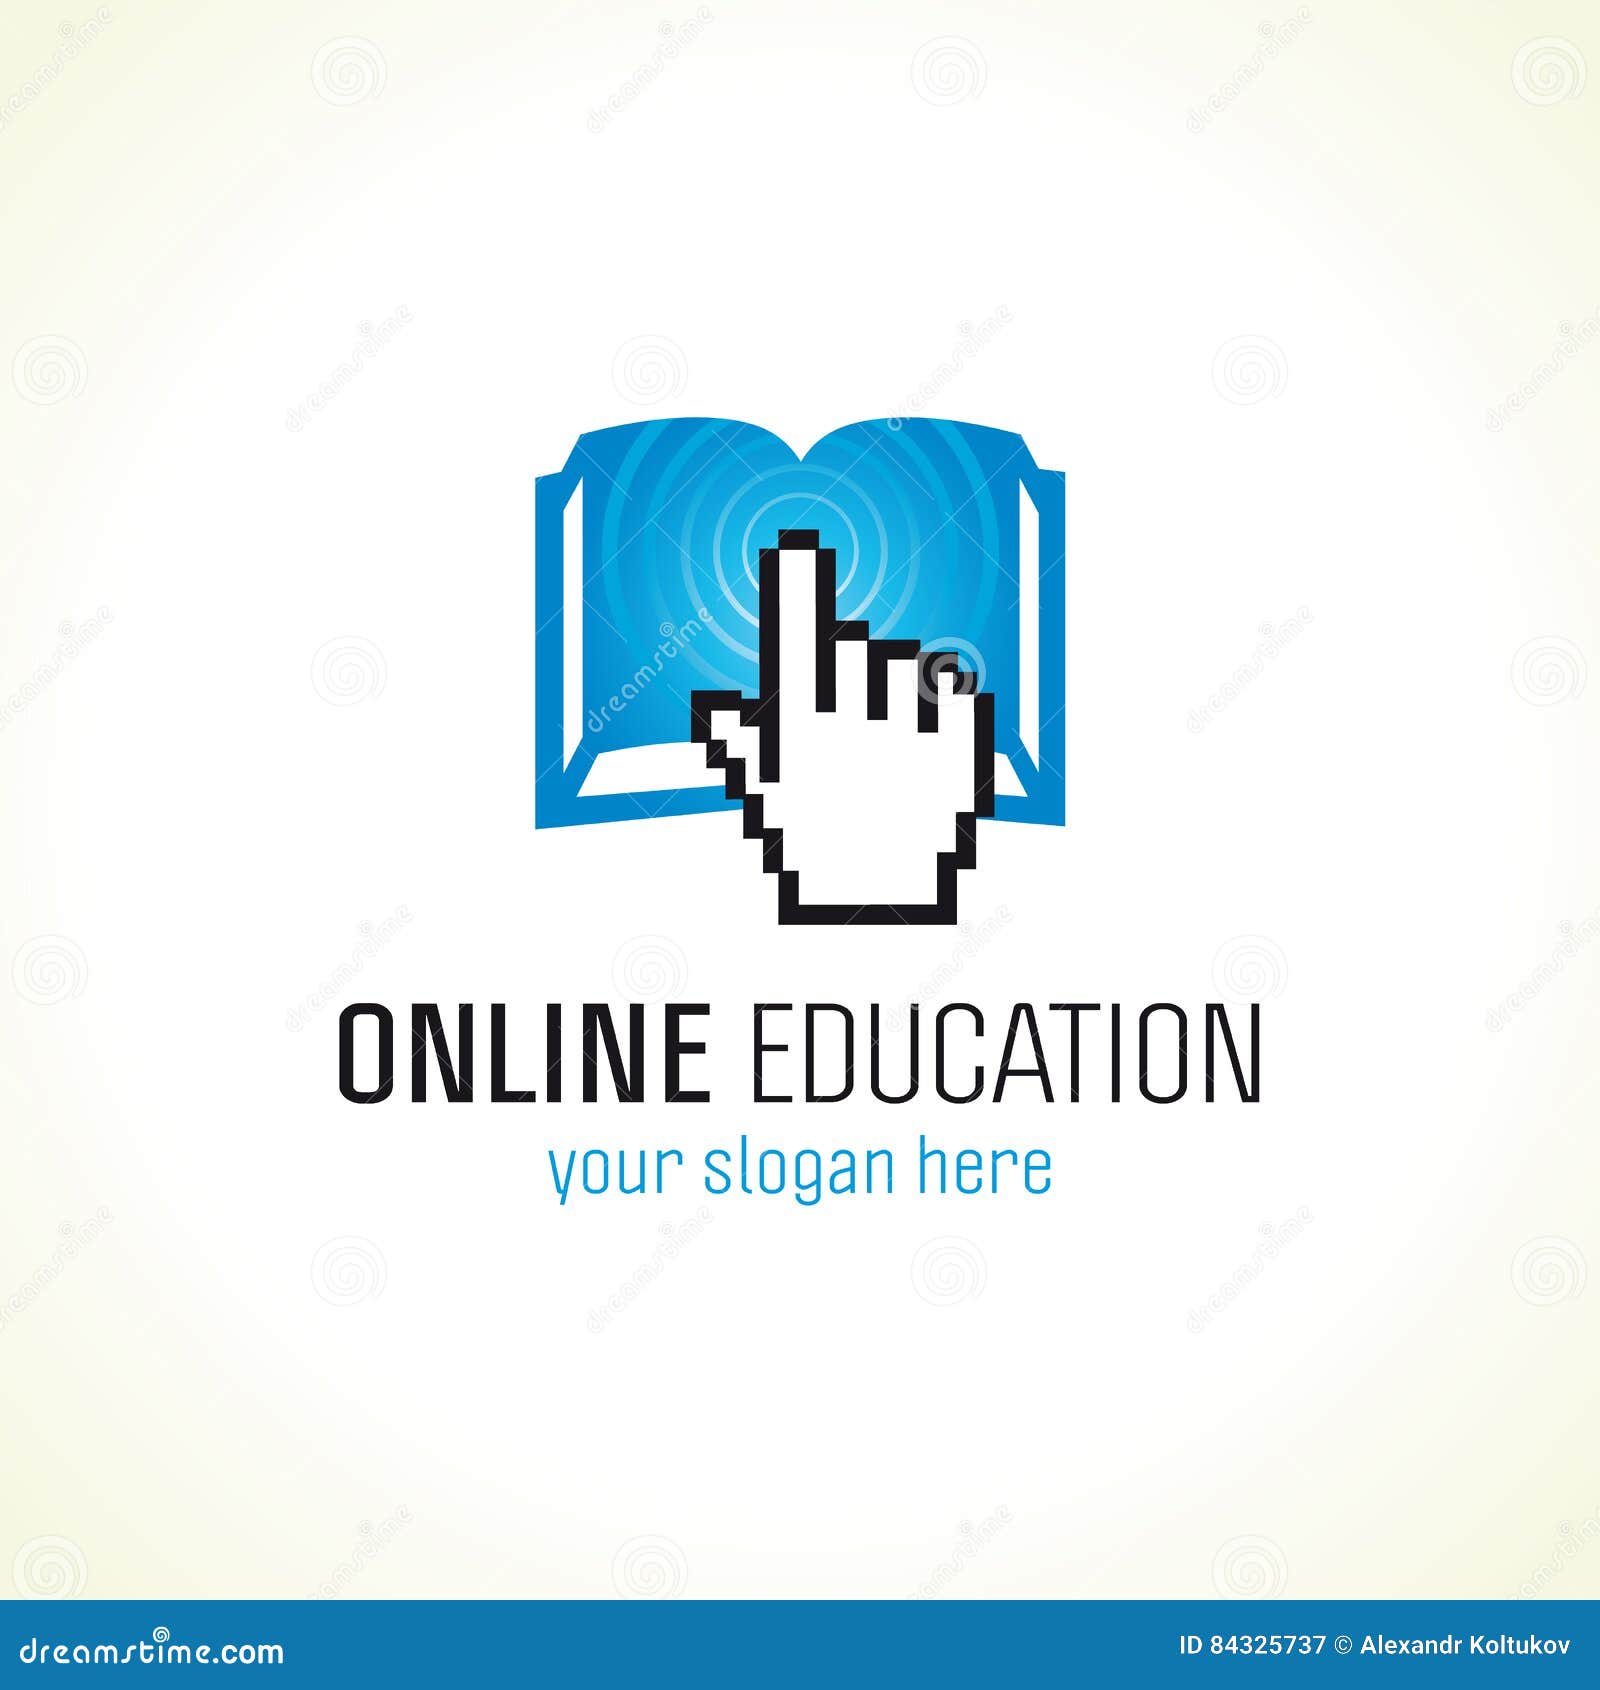 Online Education Vector Logo Stock Vector Illustration Of Idea Debate 84325737